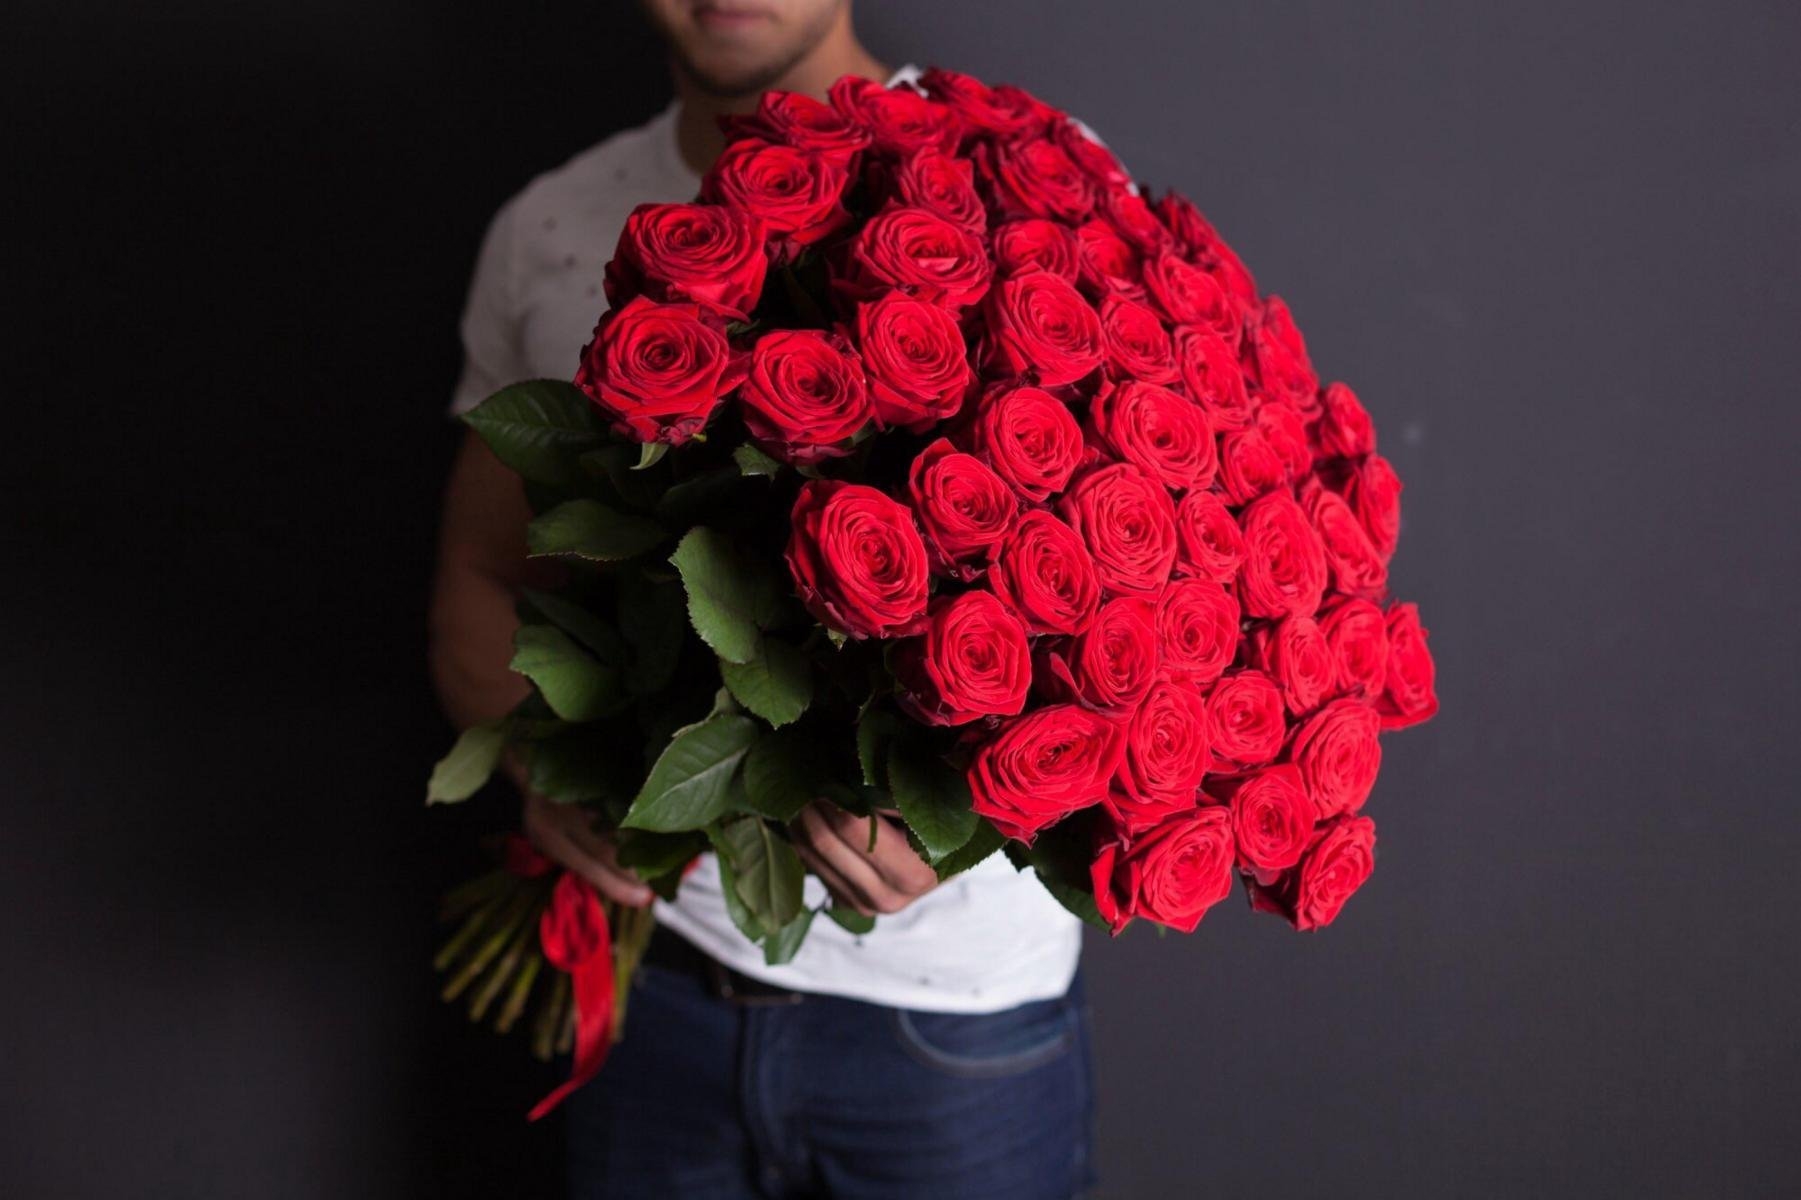 Картинка мужчина дарящего цветы. Парень с букетом роз. Букет цветов для мужчины. Огромный букет цветов. Букет роз в руках.